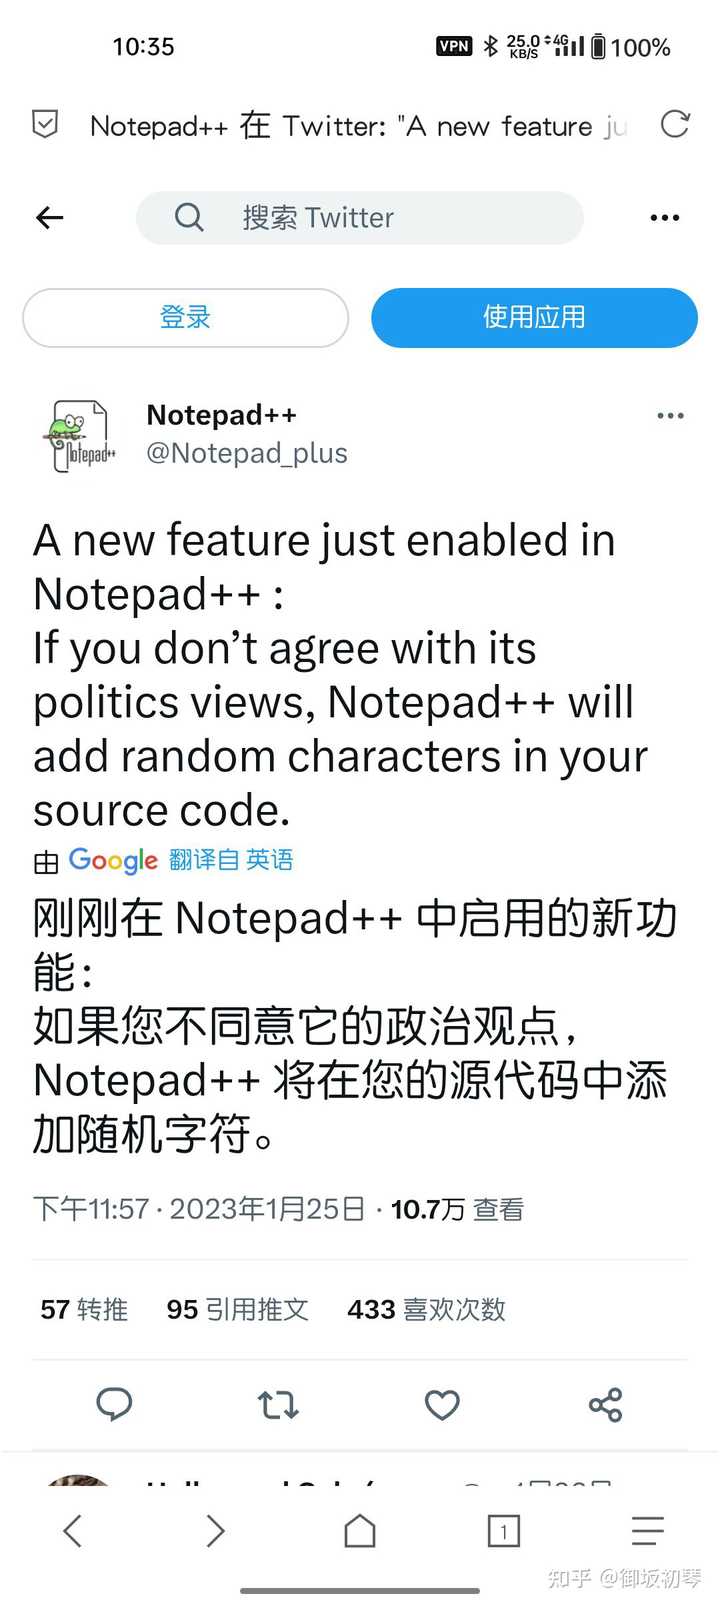 如何看待Notepad++作者声称不同意